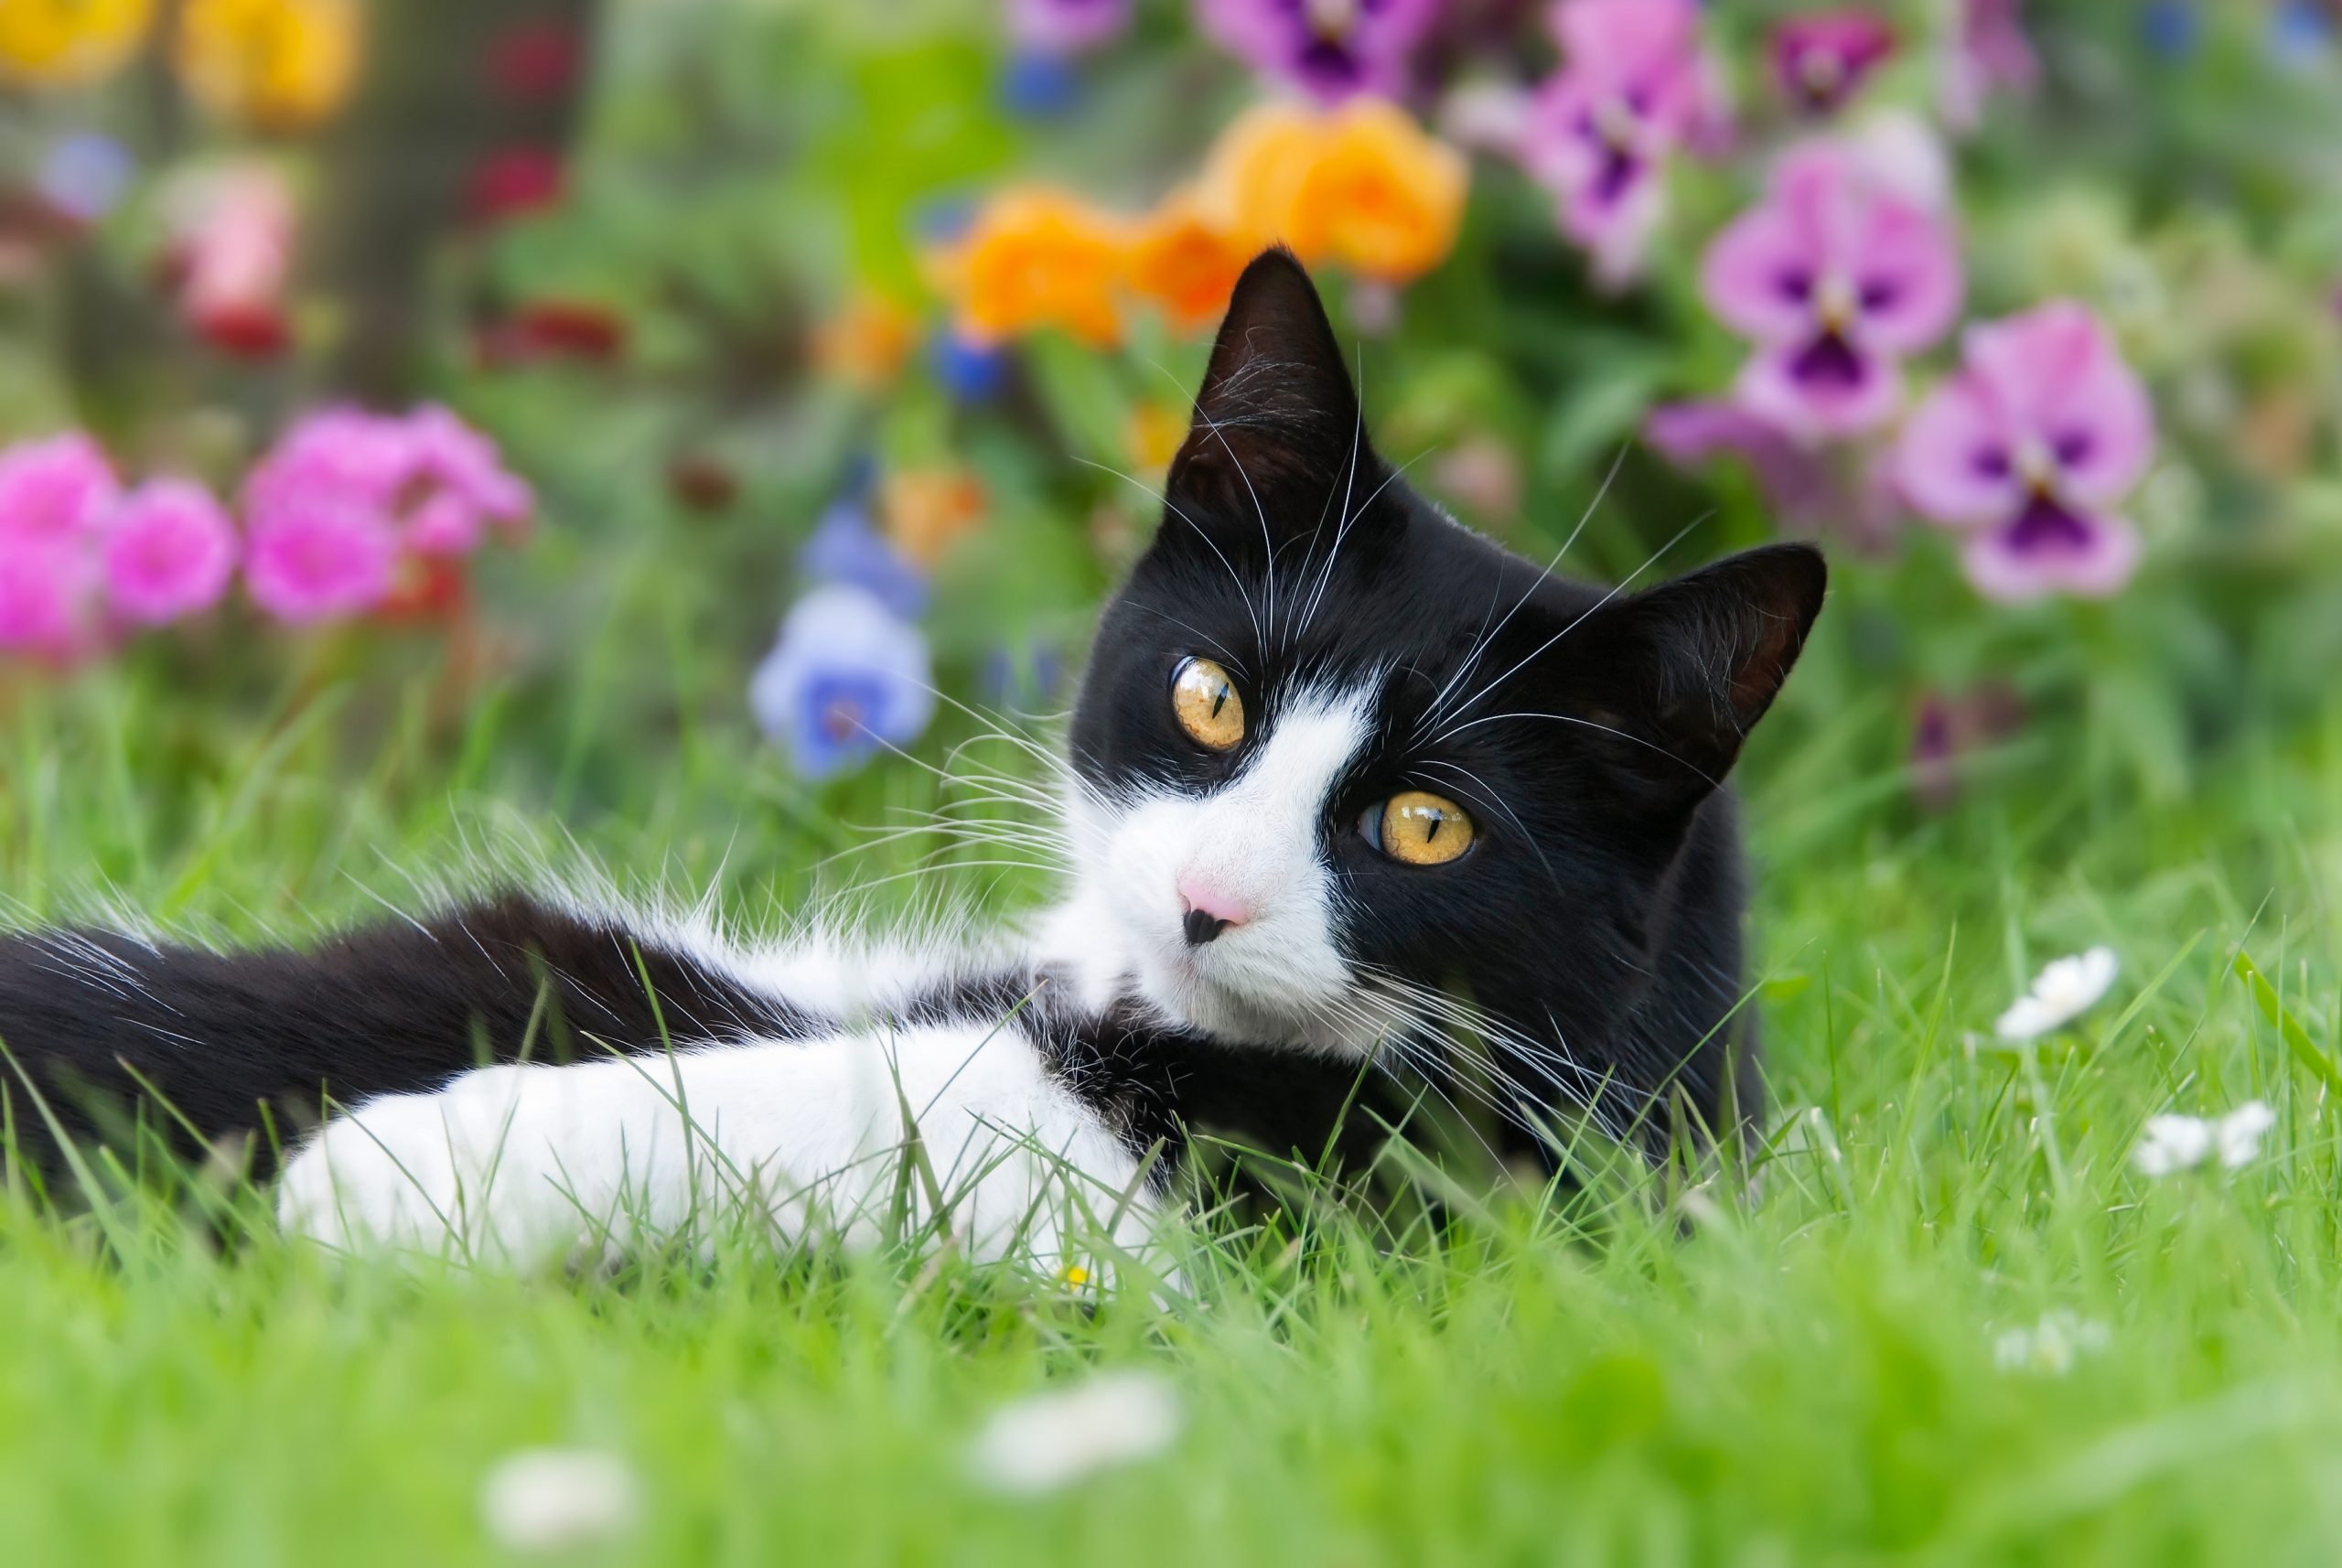 Auch im Garten kommen Katzen oft mit giftigen Substanzen in Kontakt. Foto © kathomenden stock adobe